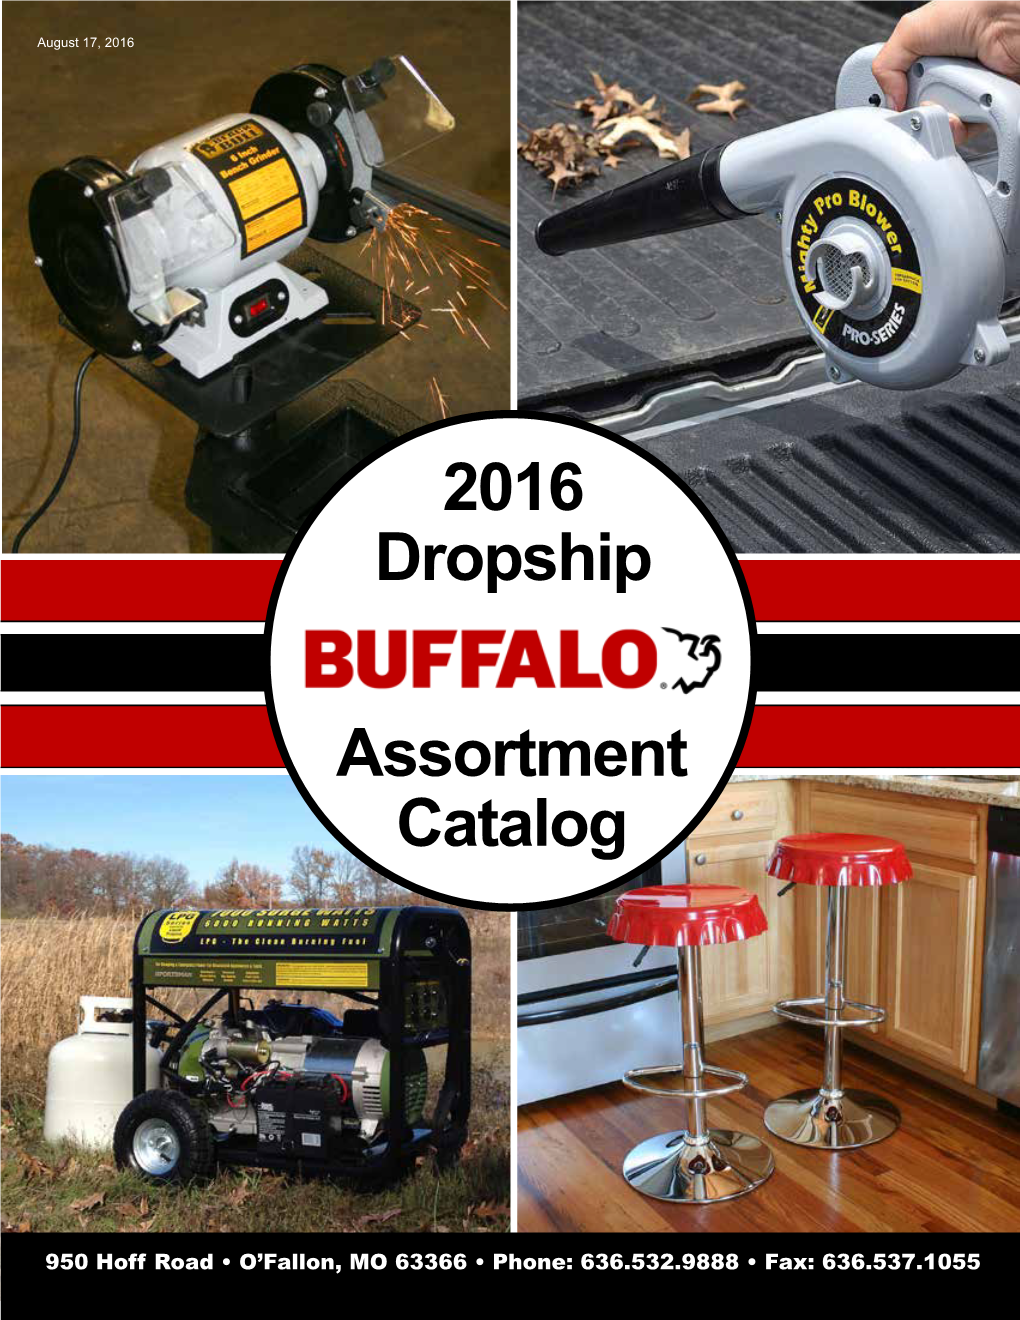 2016 Dropship Assortment Catalog